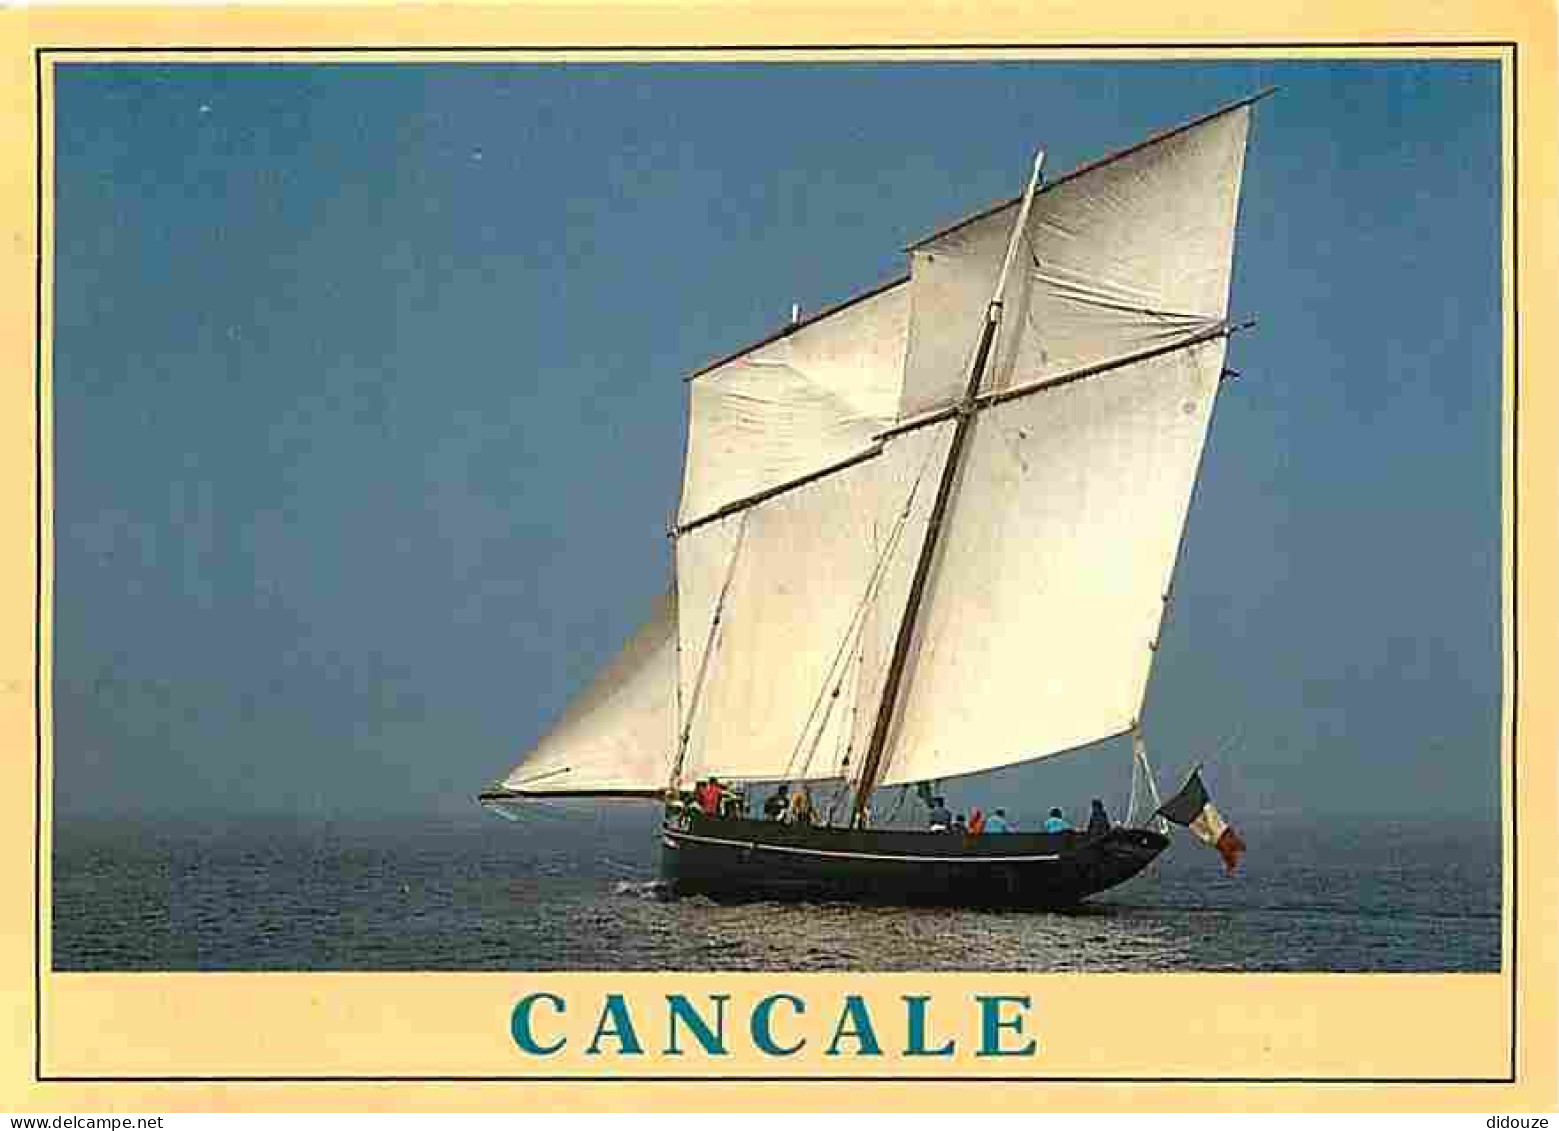 Bateaux - Voiliers - Cancale - La Cancalaise - Flamme Postale De Dinard - CPM - Voir Scans Recto-Verso - Segelboote